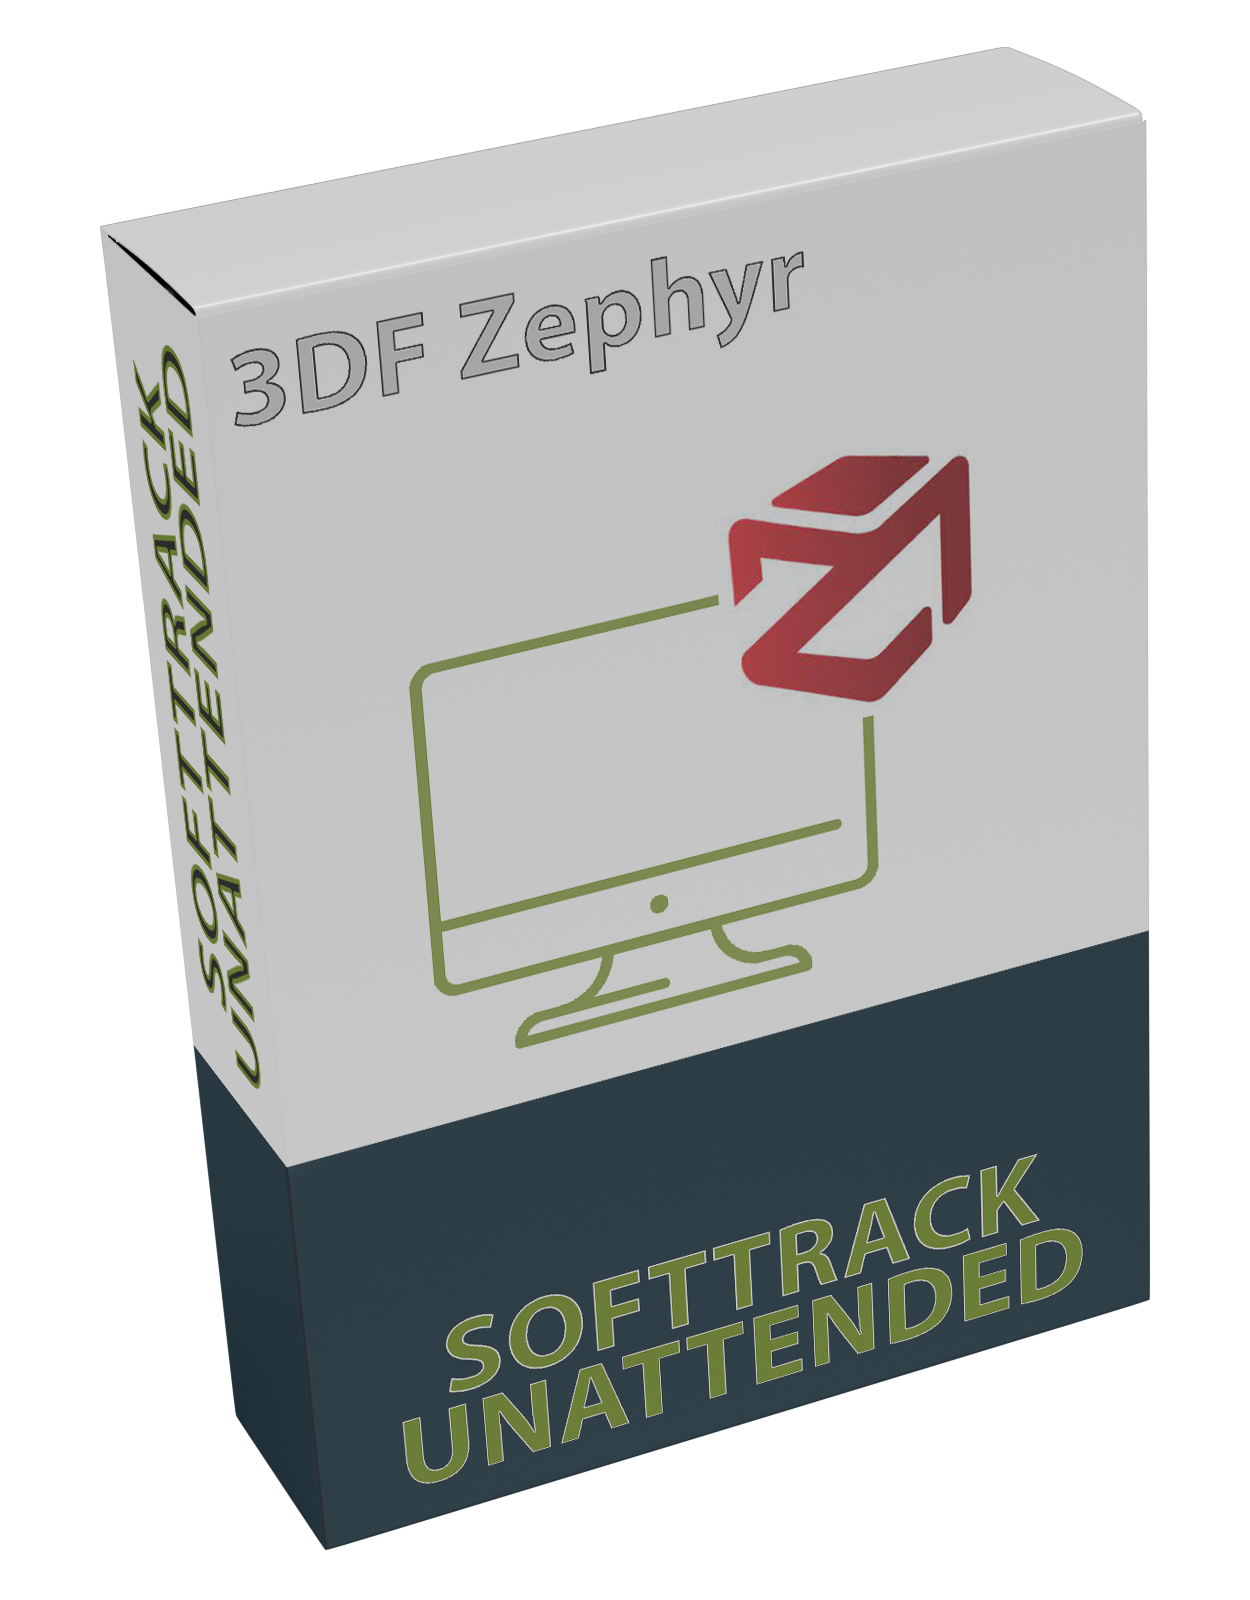 3DF Zephyr 6.505 UNATTENDED